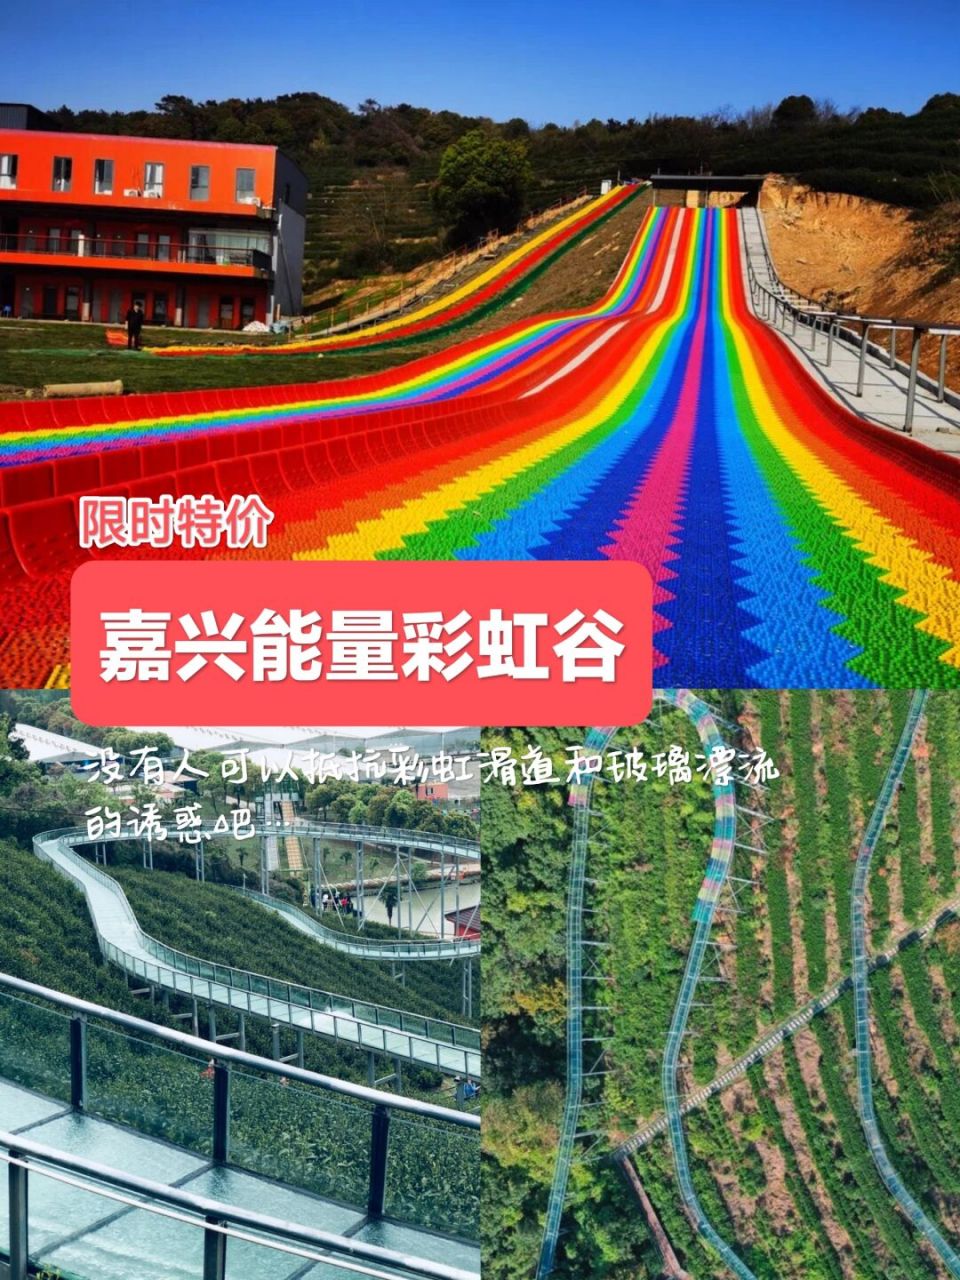 能量彩虹谷营地位于浙江杭州海盐杭州湾畔,隐马山麓的文溪坞内,自然